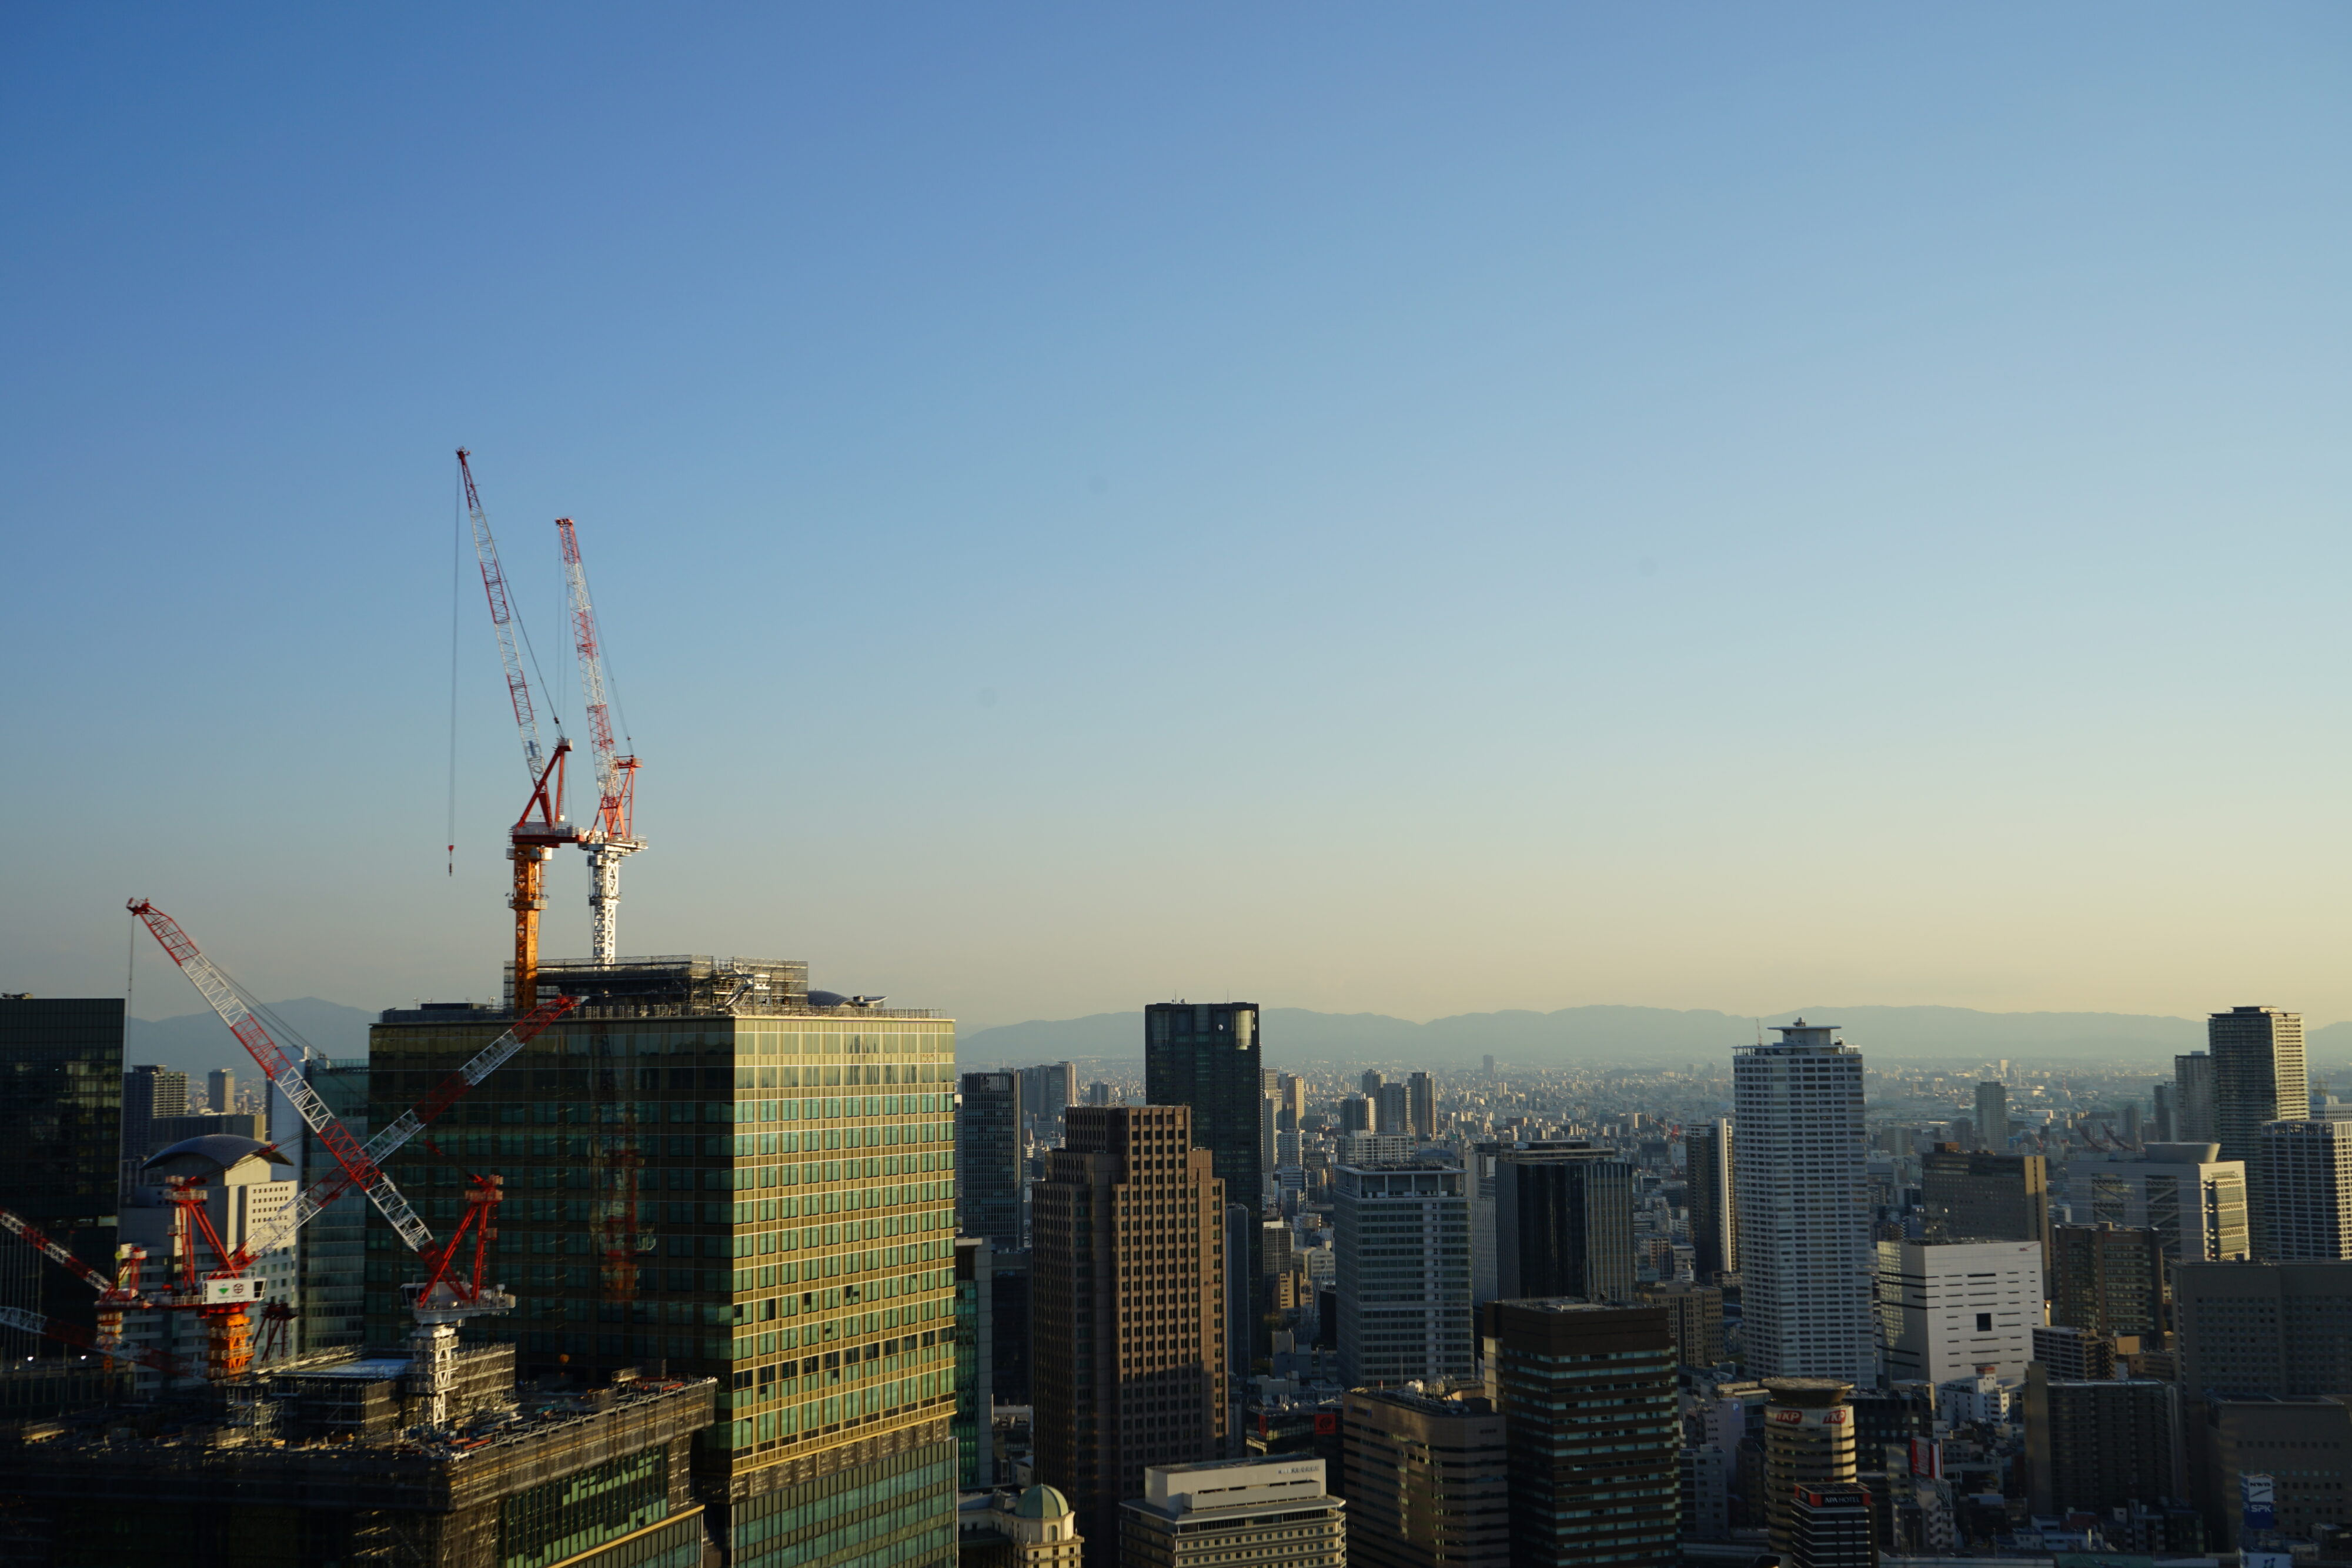 Blick auf Osaka mit Hochhäusern auf den Kräne stehen. In der Ferne sind Berge zu sehen.